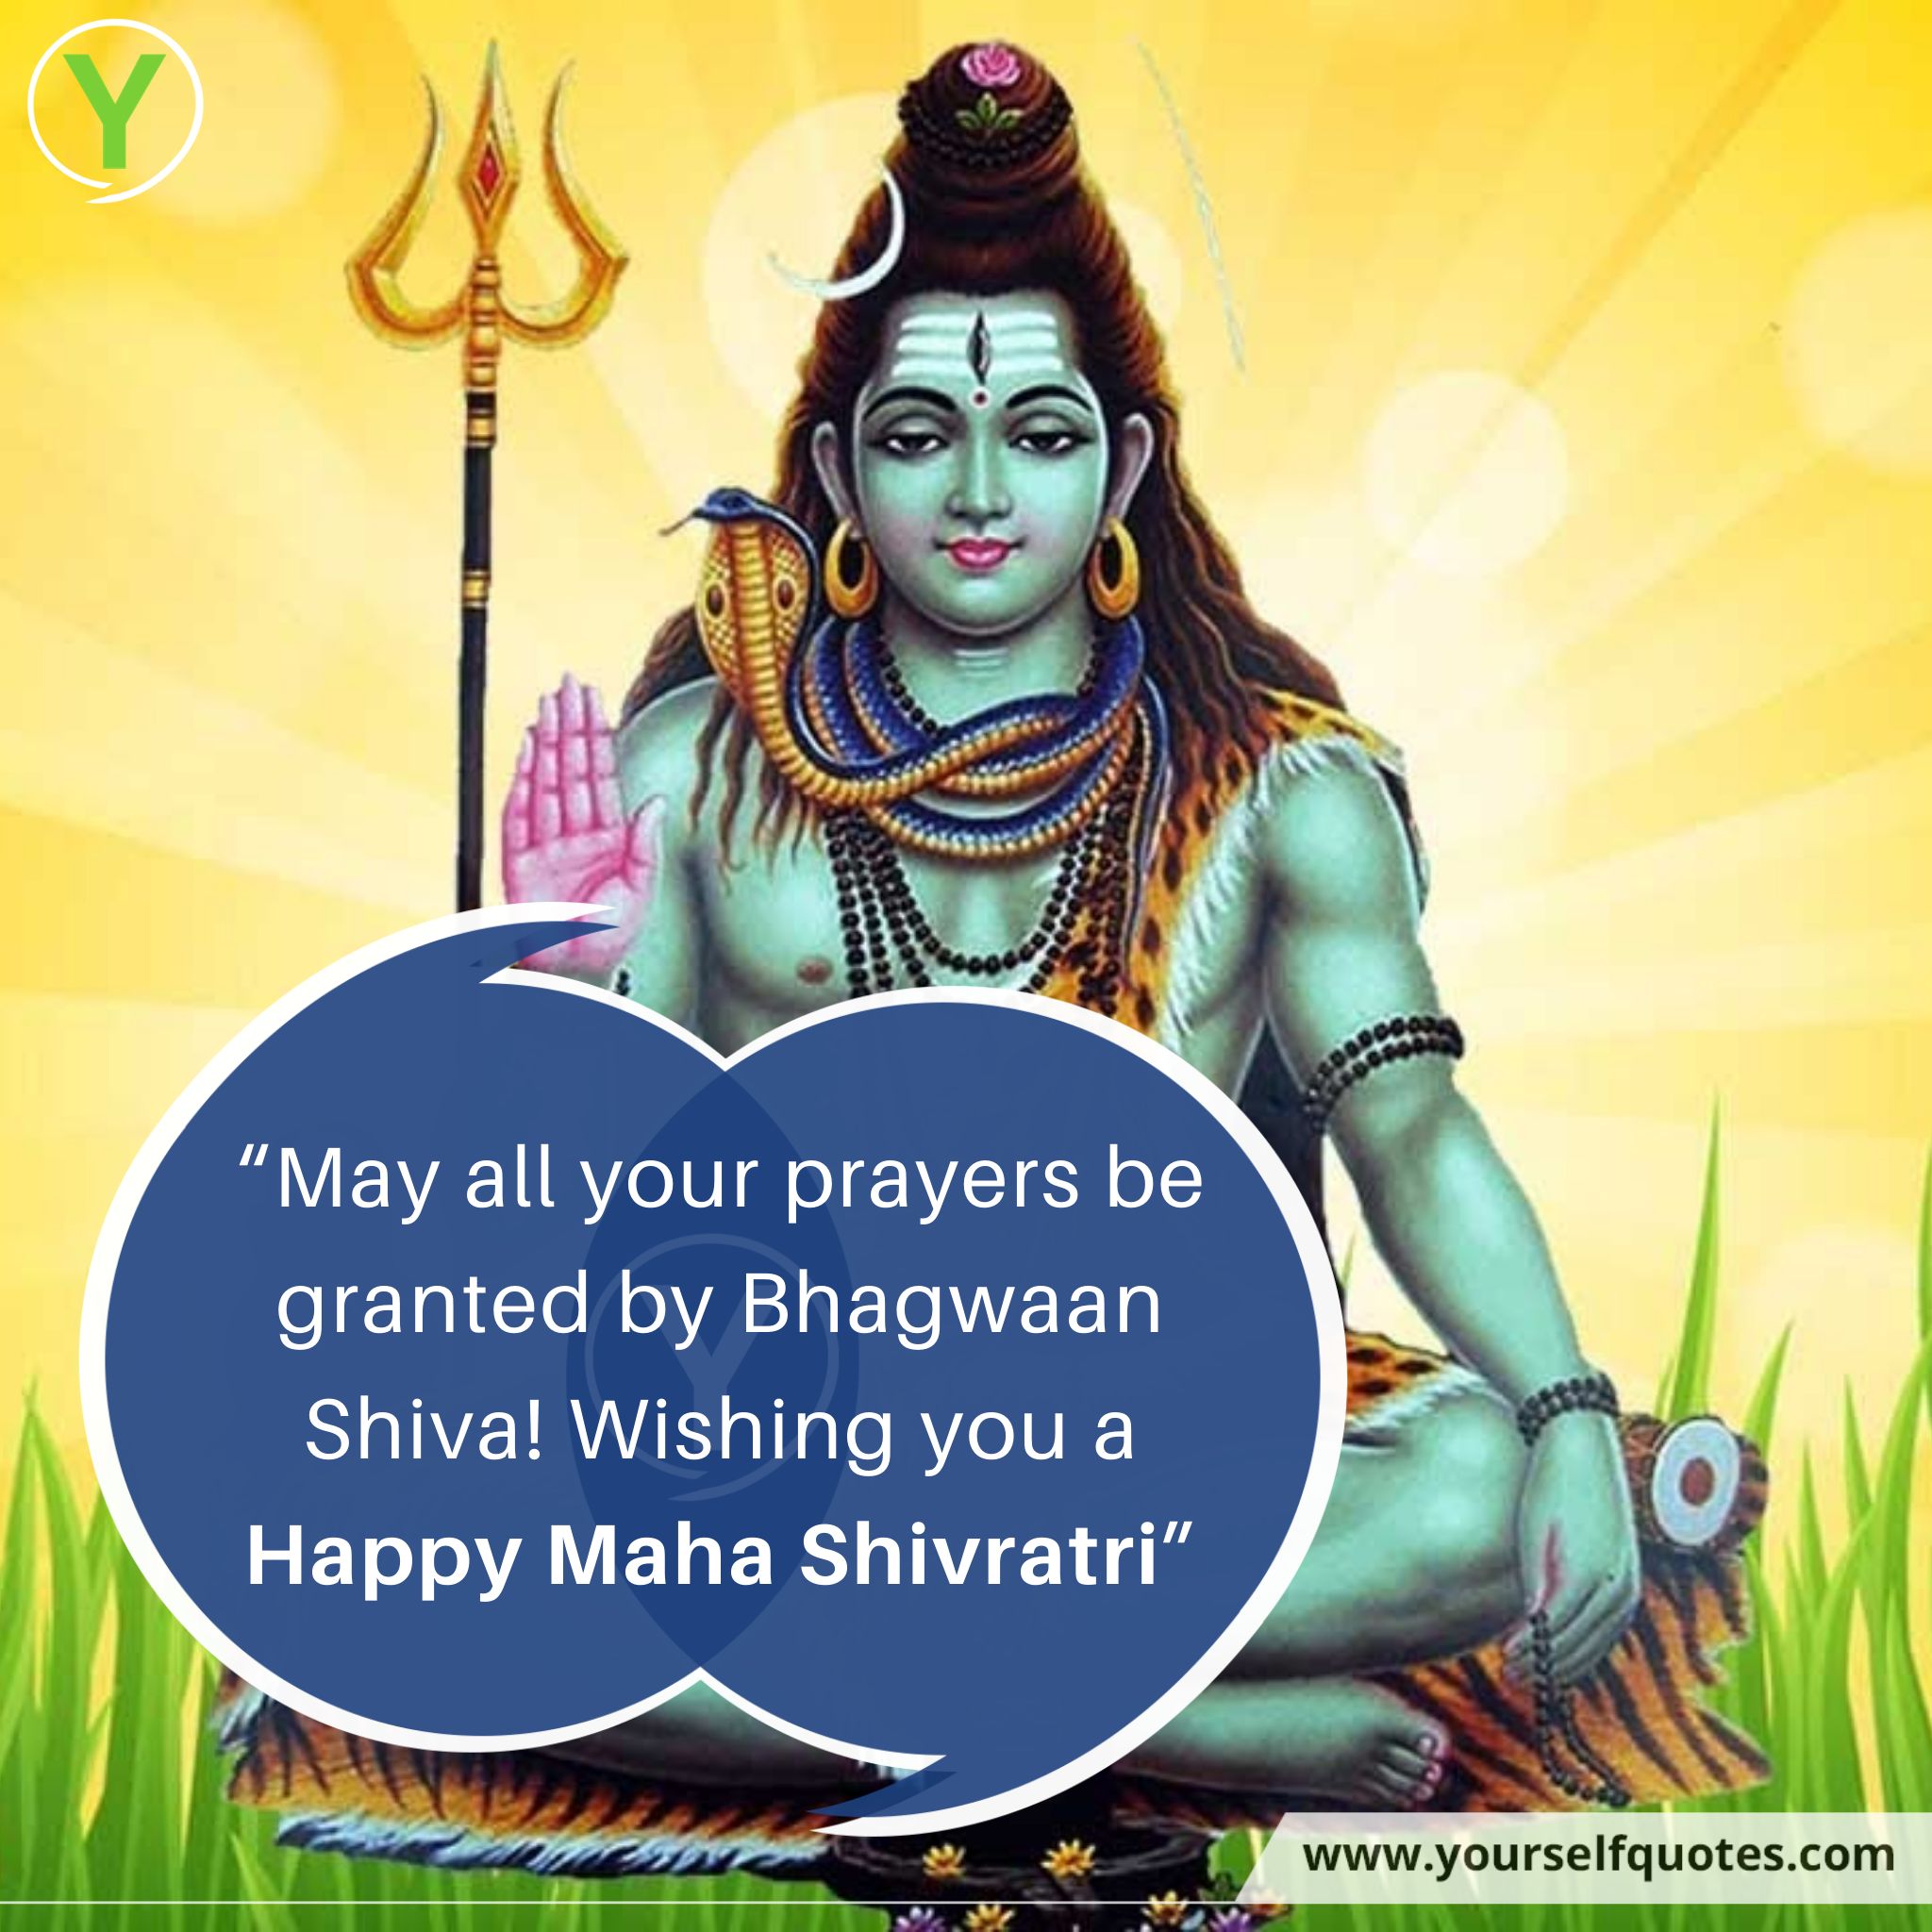 Happy Maha Shivratri Quotes Images